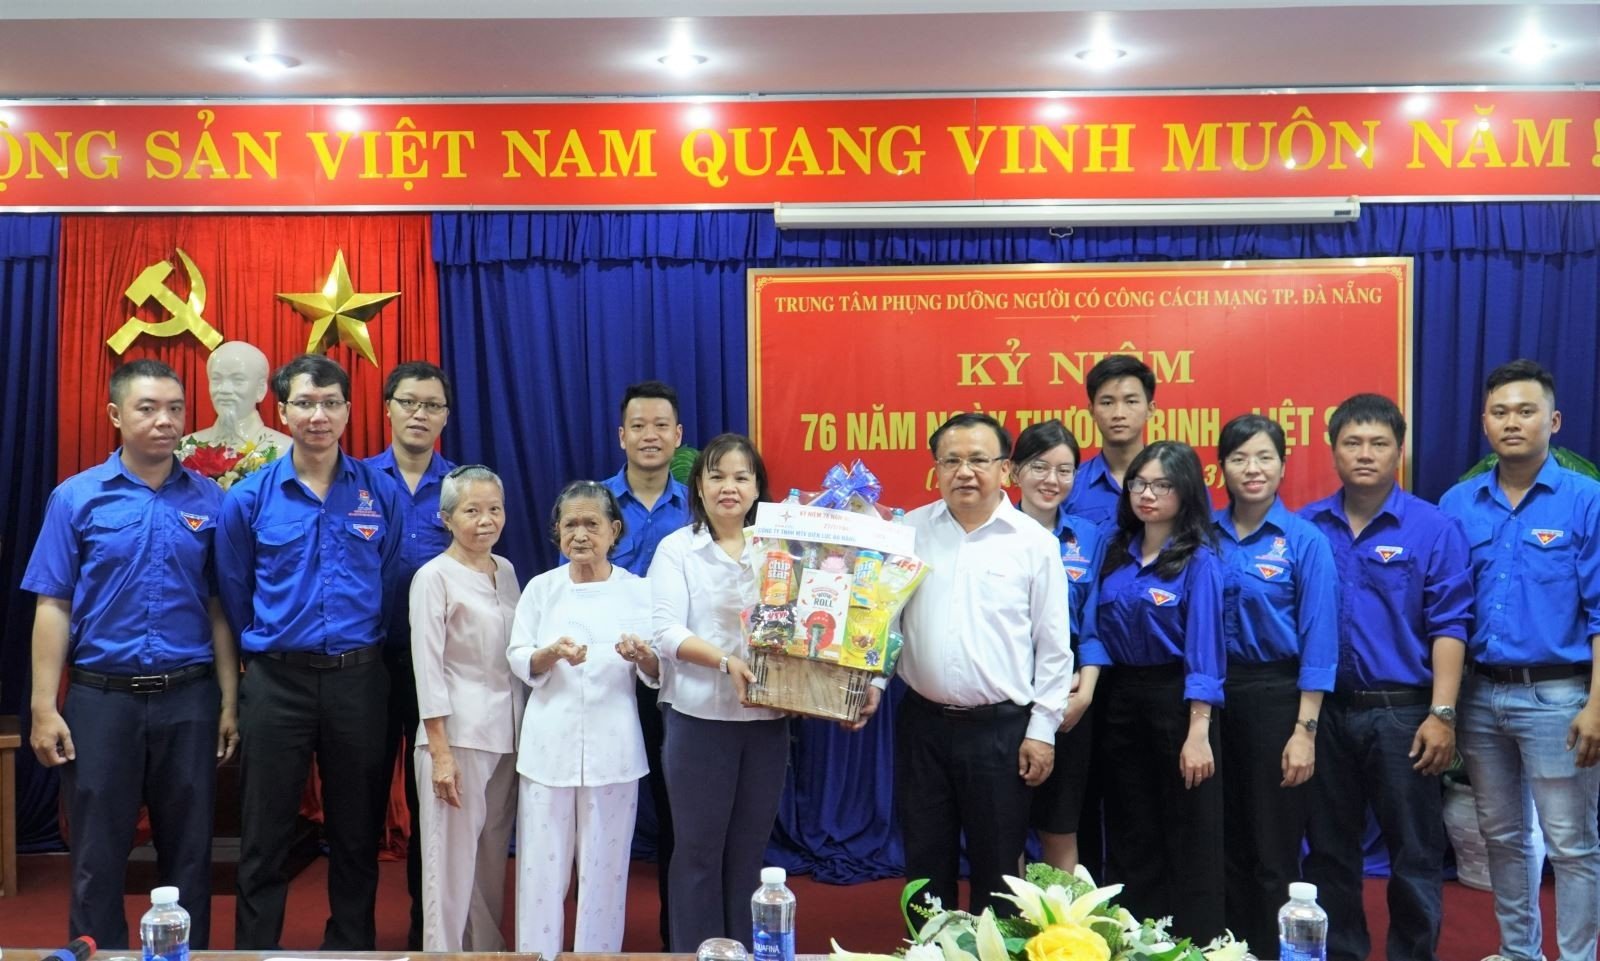 Công đoàn và Đoàn Thanh niên Công ty đến thăm và tặng quà Trung tâm phụng dưỡng người có công cách mạng thành phố Đà Nẵng 